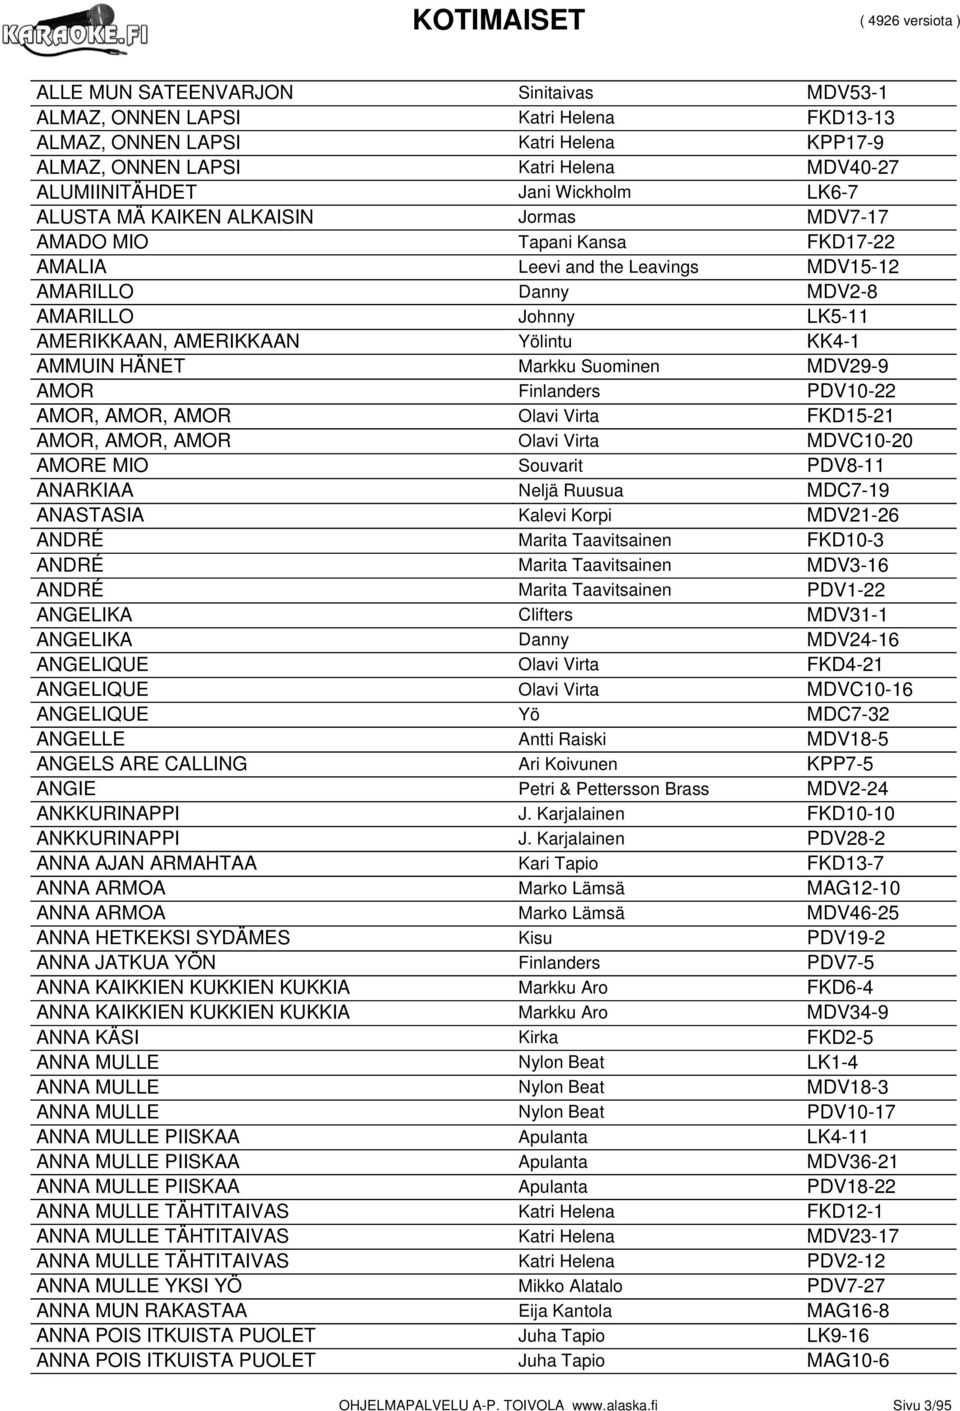 AMMUIN HÄNET Markku Suominen MDV29-9 AMOR Finlanders PDV10-22 AMOR, AMOR, AMOR Olavi Virta FKD15-21 AMOR, AMOR, AMOR Olavi Virta MDVC10-20 AMORE MIO Souvarit PDV8-11 ANARKIAA Neljä Ruusua MDC7-19